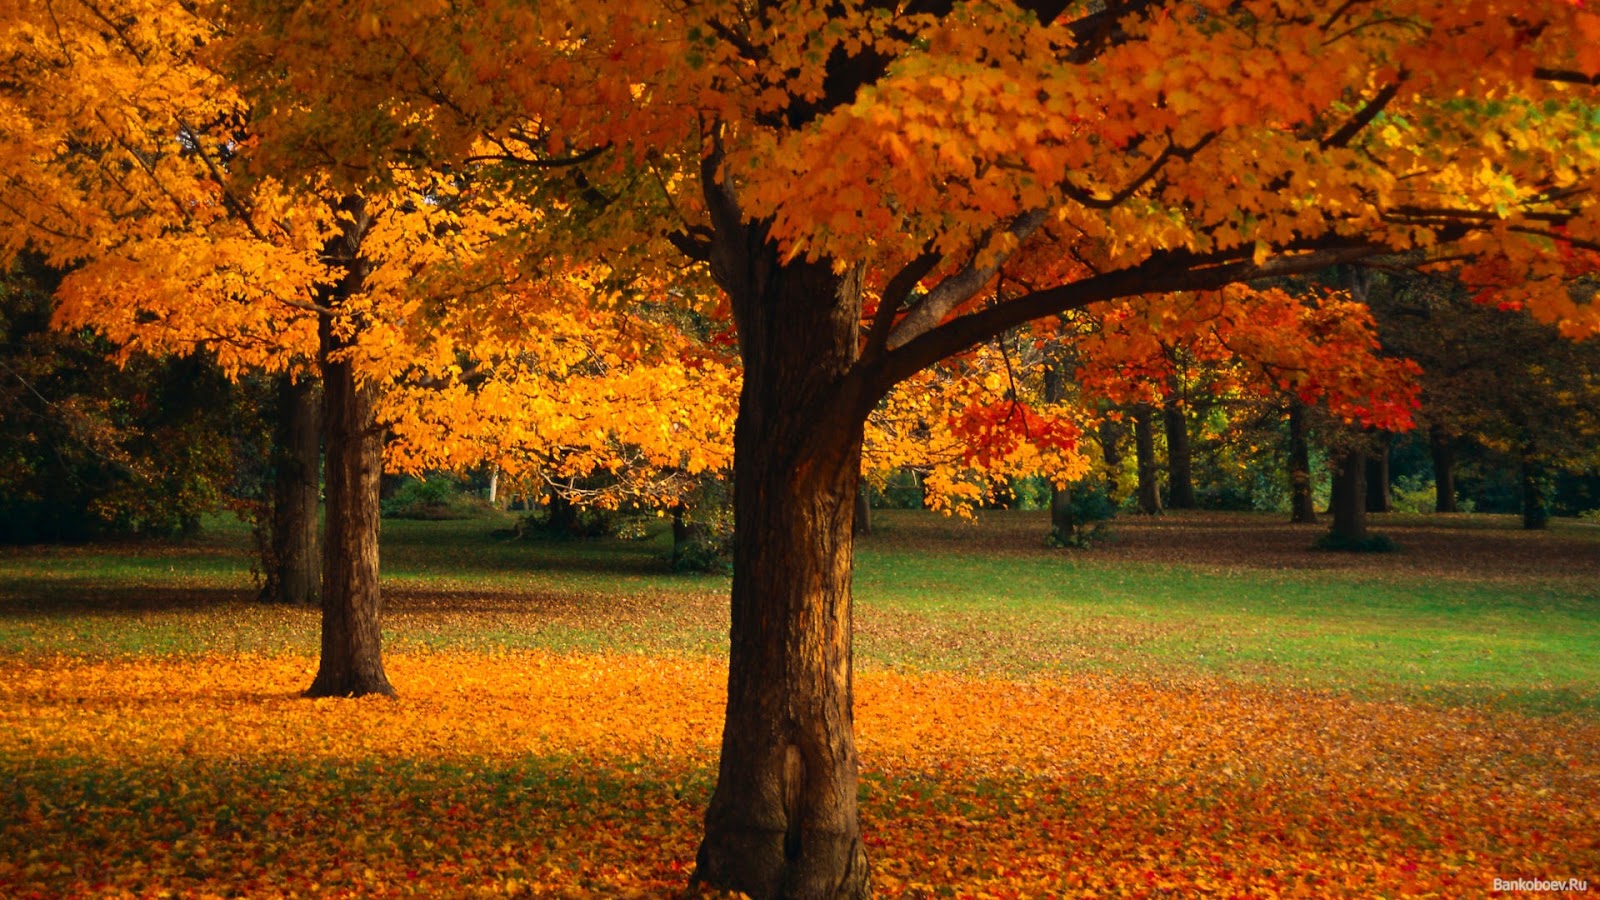 Da click aquí y veras mas wallpapers de otoño